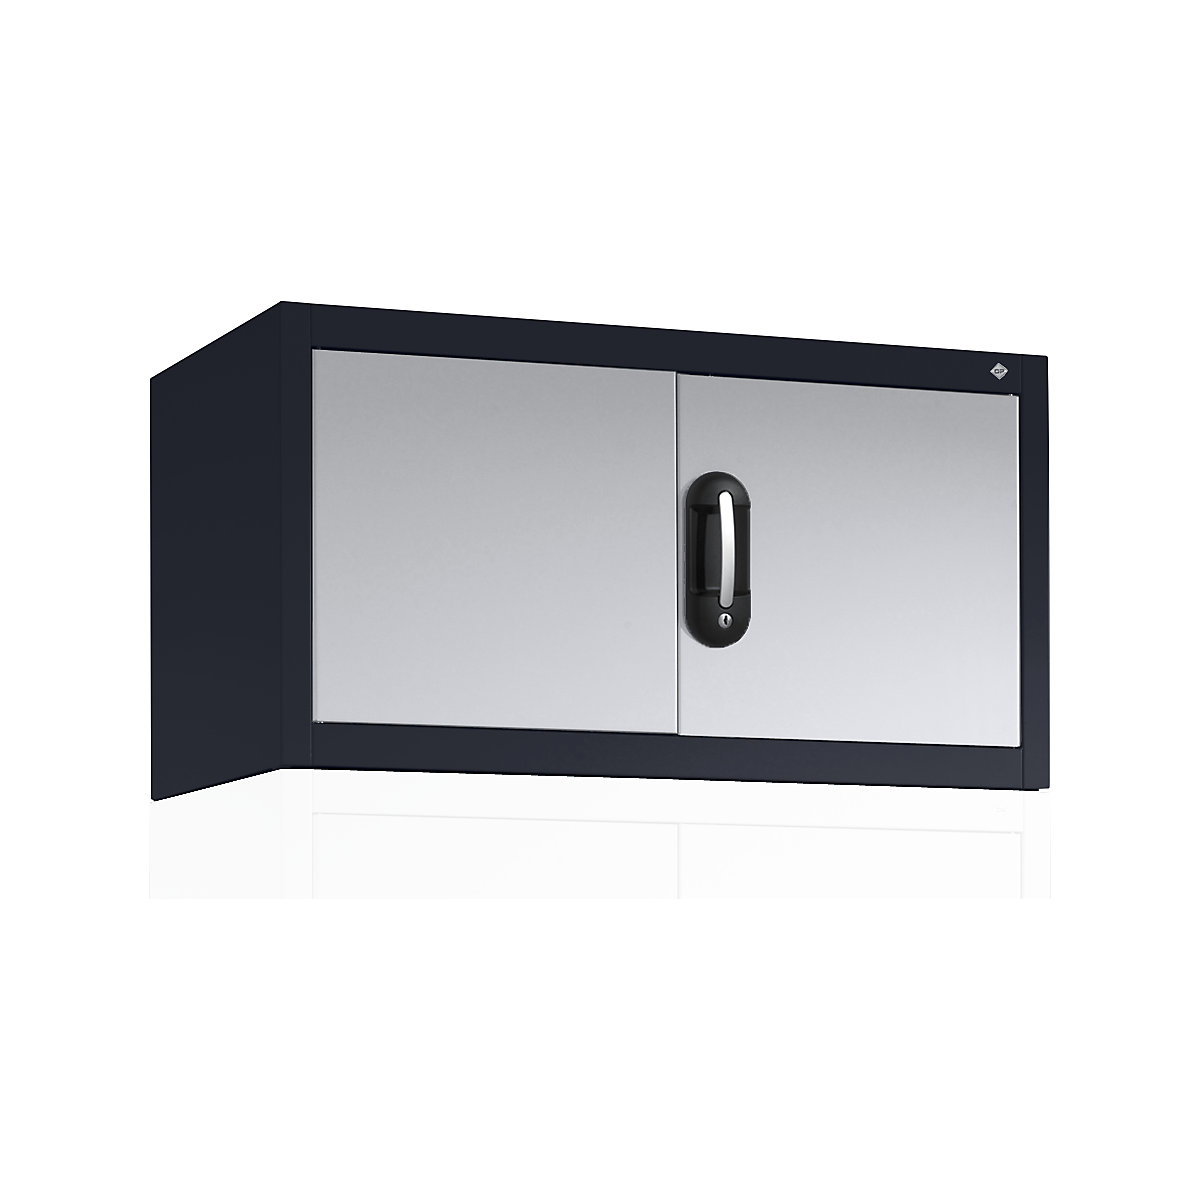 Altillo con puertas batientes ACURADO – C+P, HxAxP 500 x 930 x 400 mm, gris negruzco / aluminio blanco-7